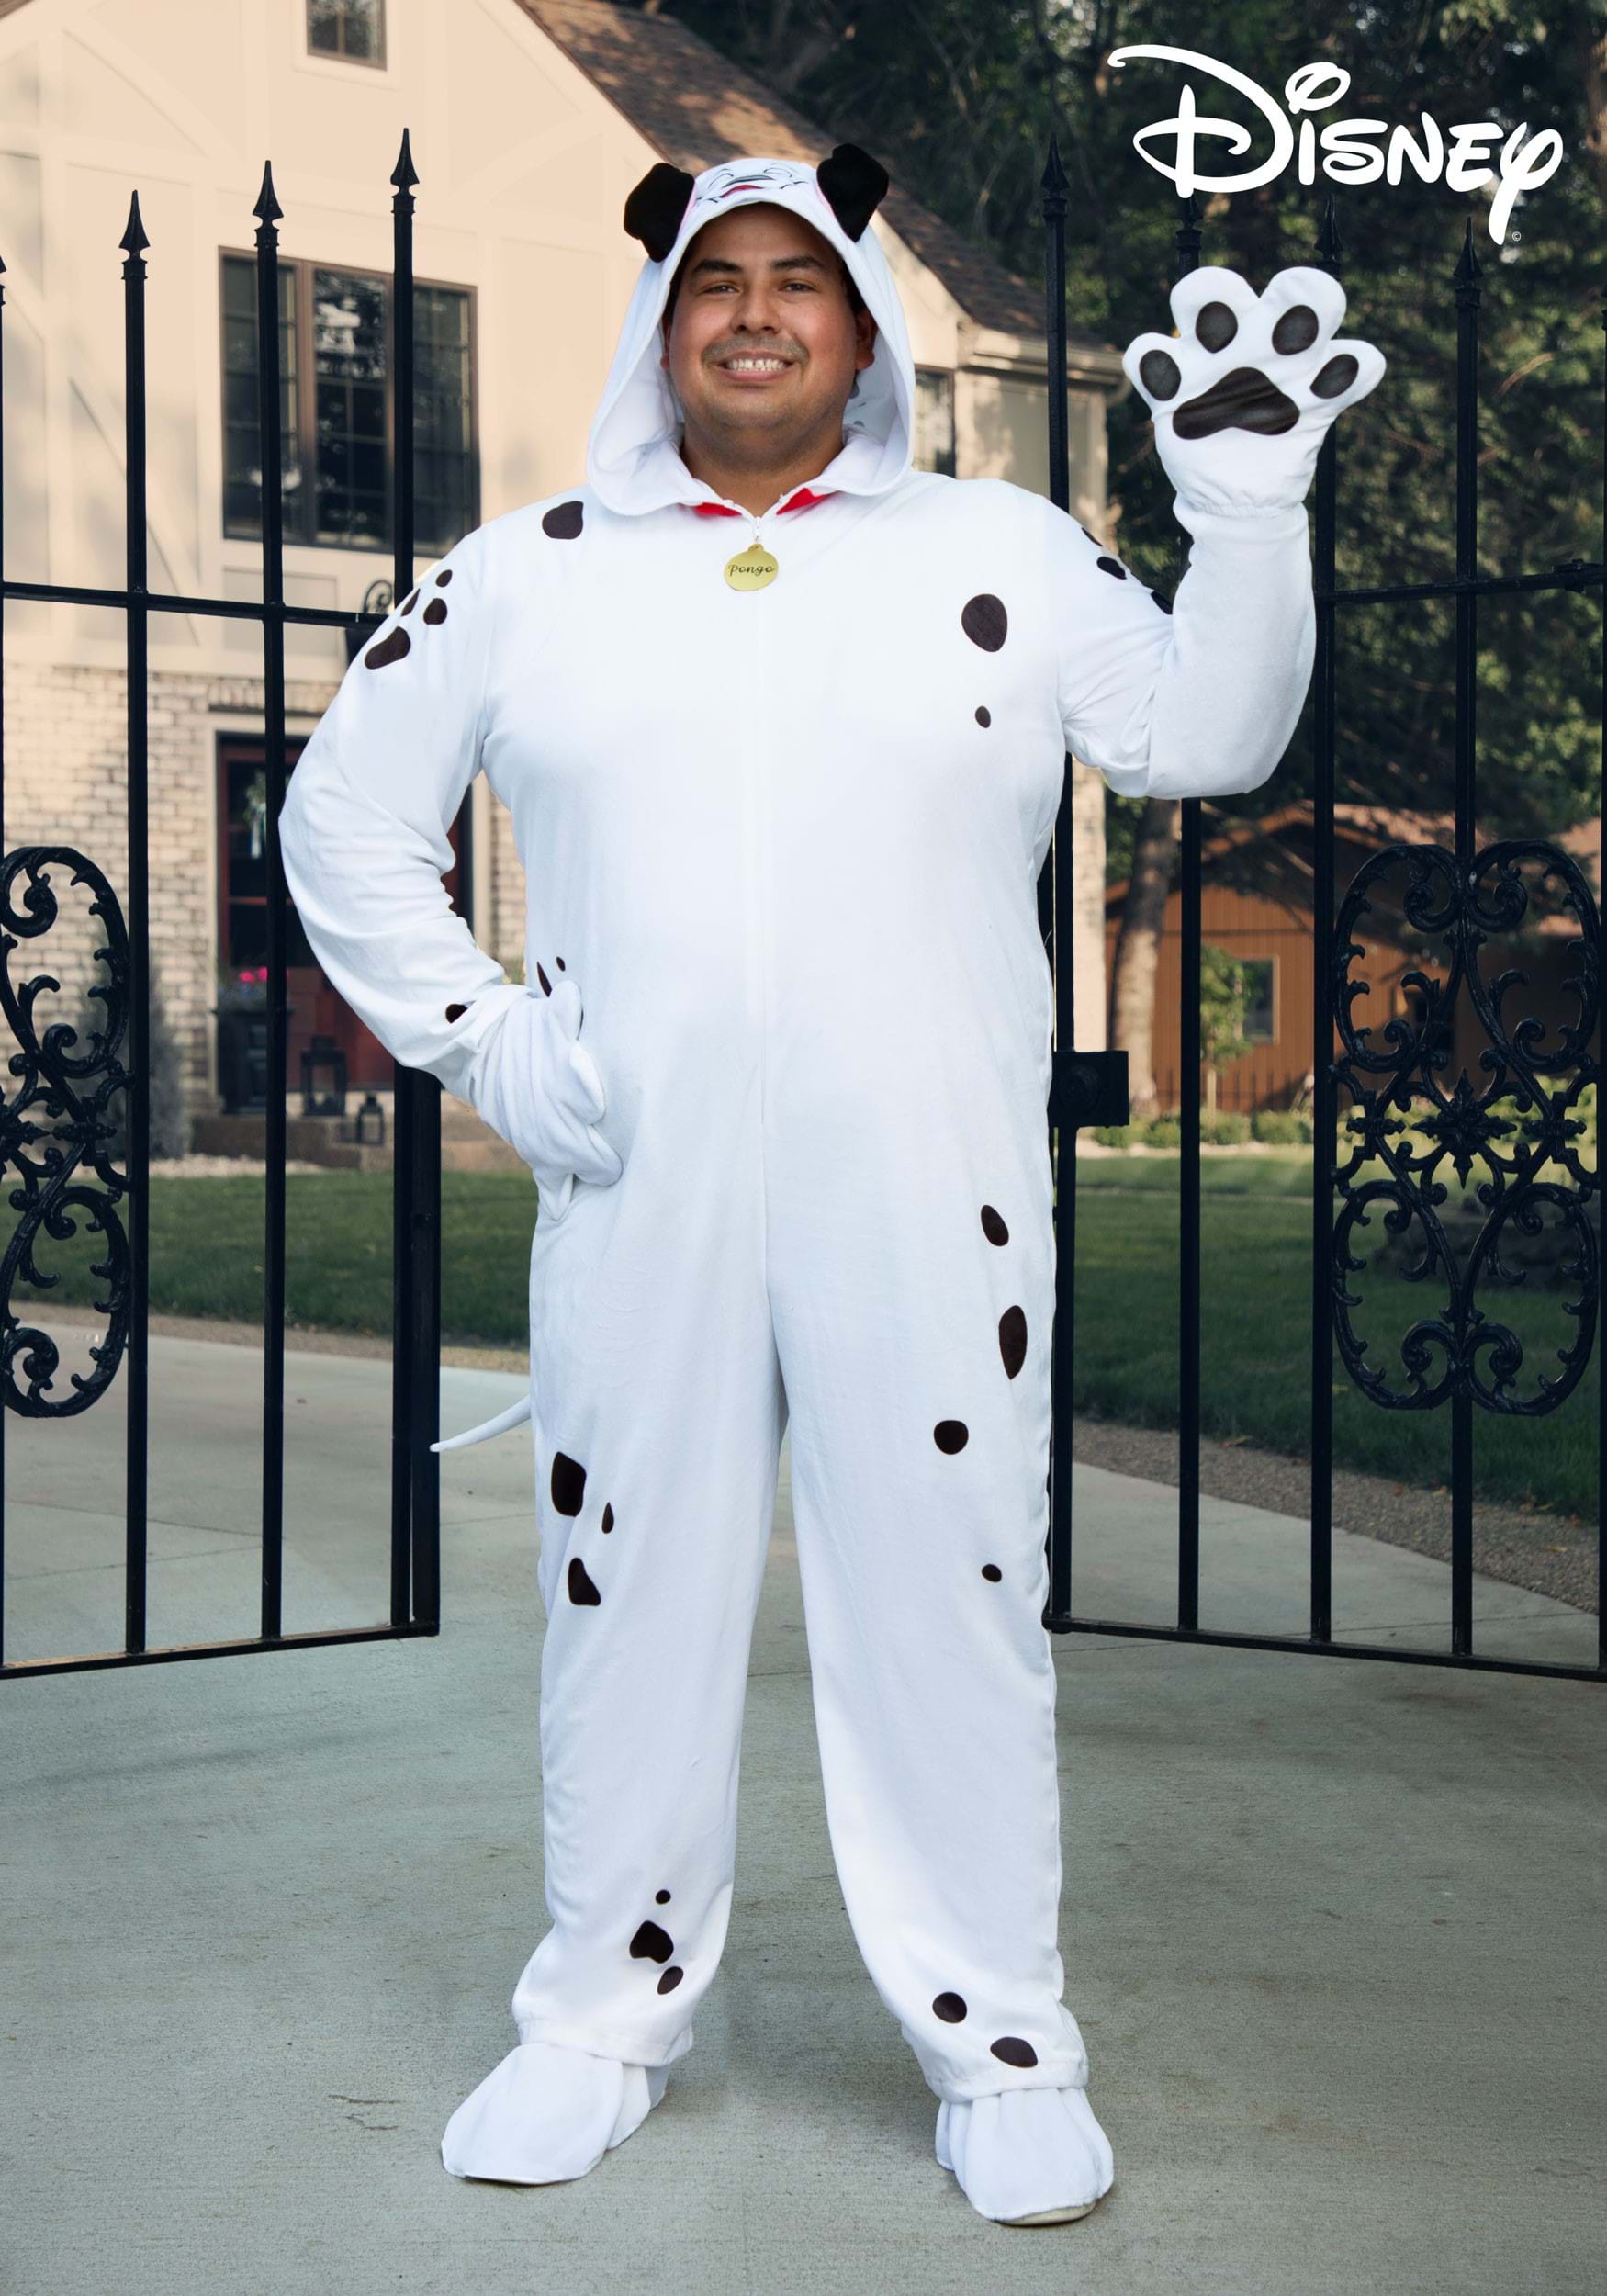 Plus Size 101 Dalmatians Costume Onesie